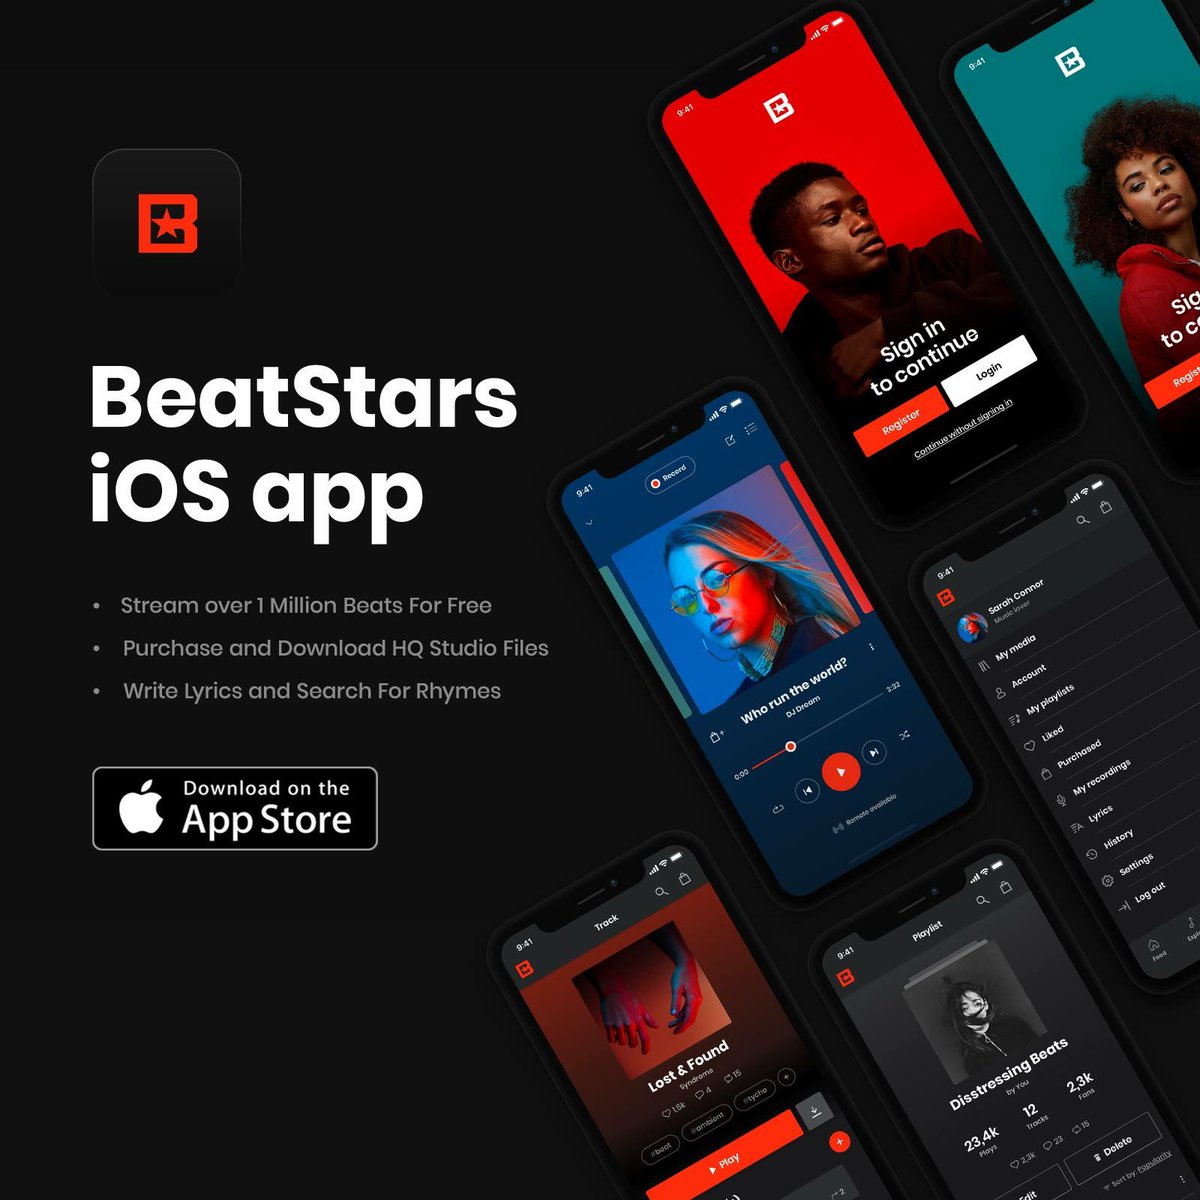 beatstars android app